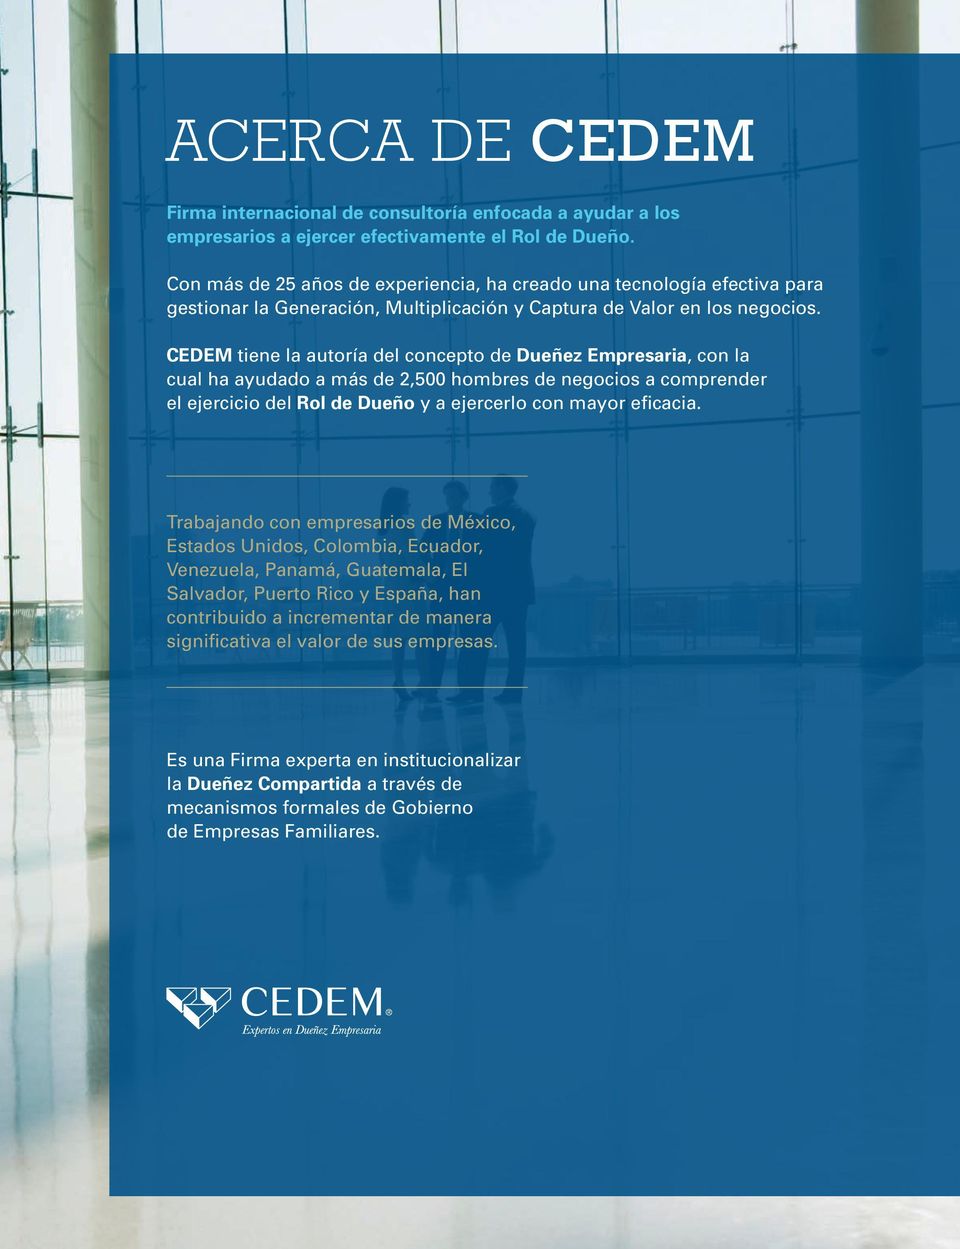 CEDEM tiene la autoría del concepto de Dueñez Empresaria, con la cual ha ayudado a más de 2,500 hombres de negocios a comprender el ejercicio del Rol de Dueño y a ejercerlo con mayor eficacia.